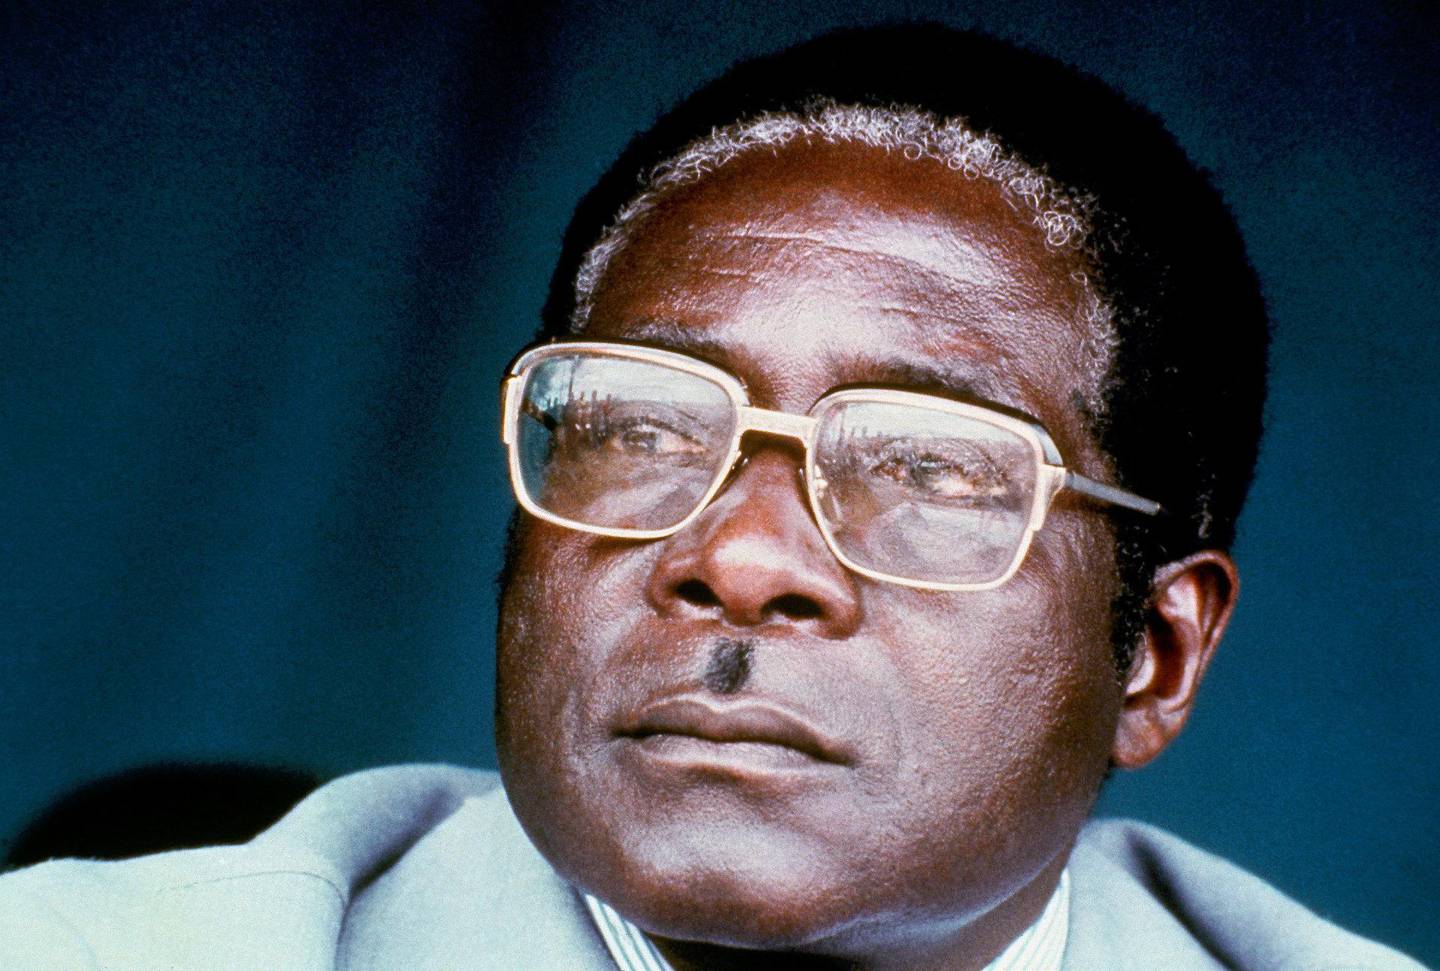 HELT: Robert Mugabe var frigjøringshelten som fikk makten. Her fra 1980, året han ble statsminister. FOTO: NTB SCANPIX